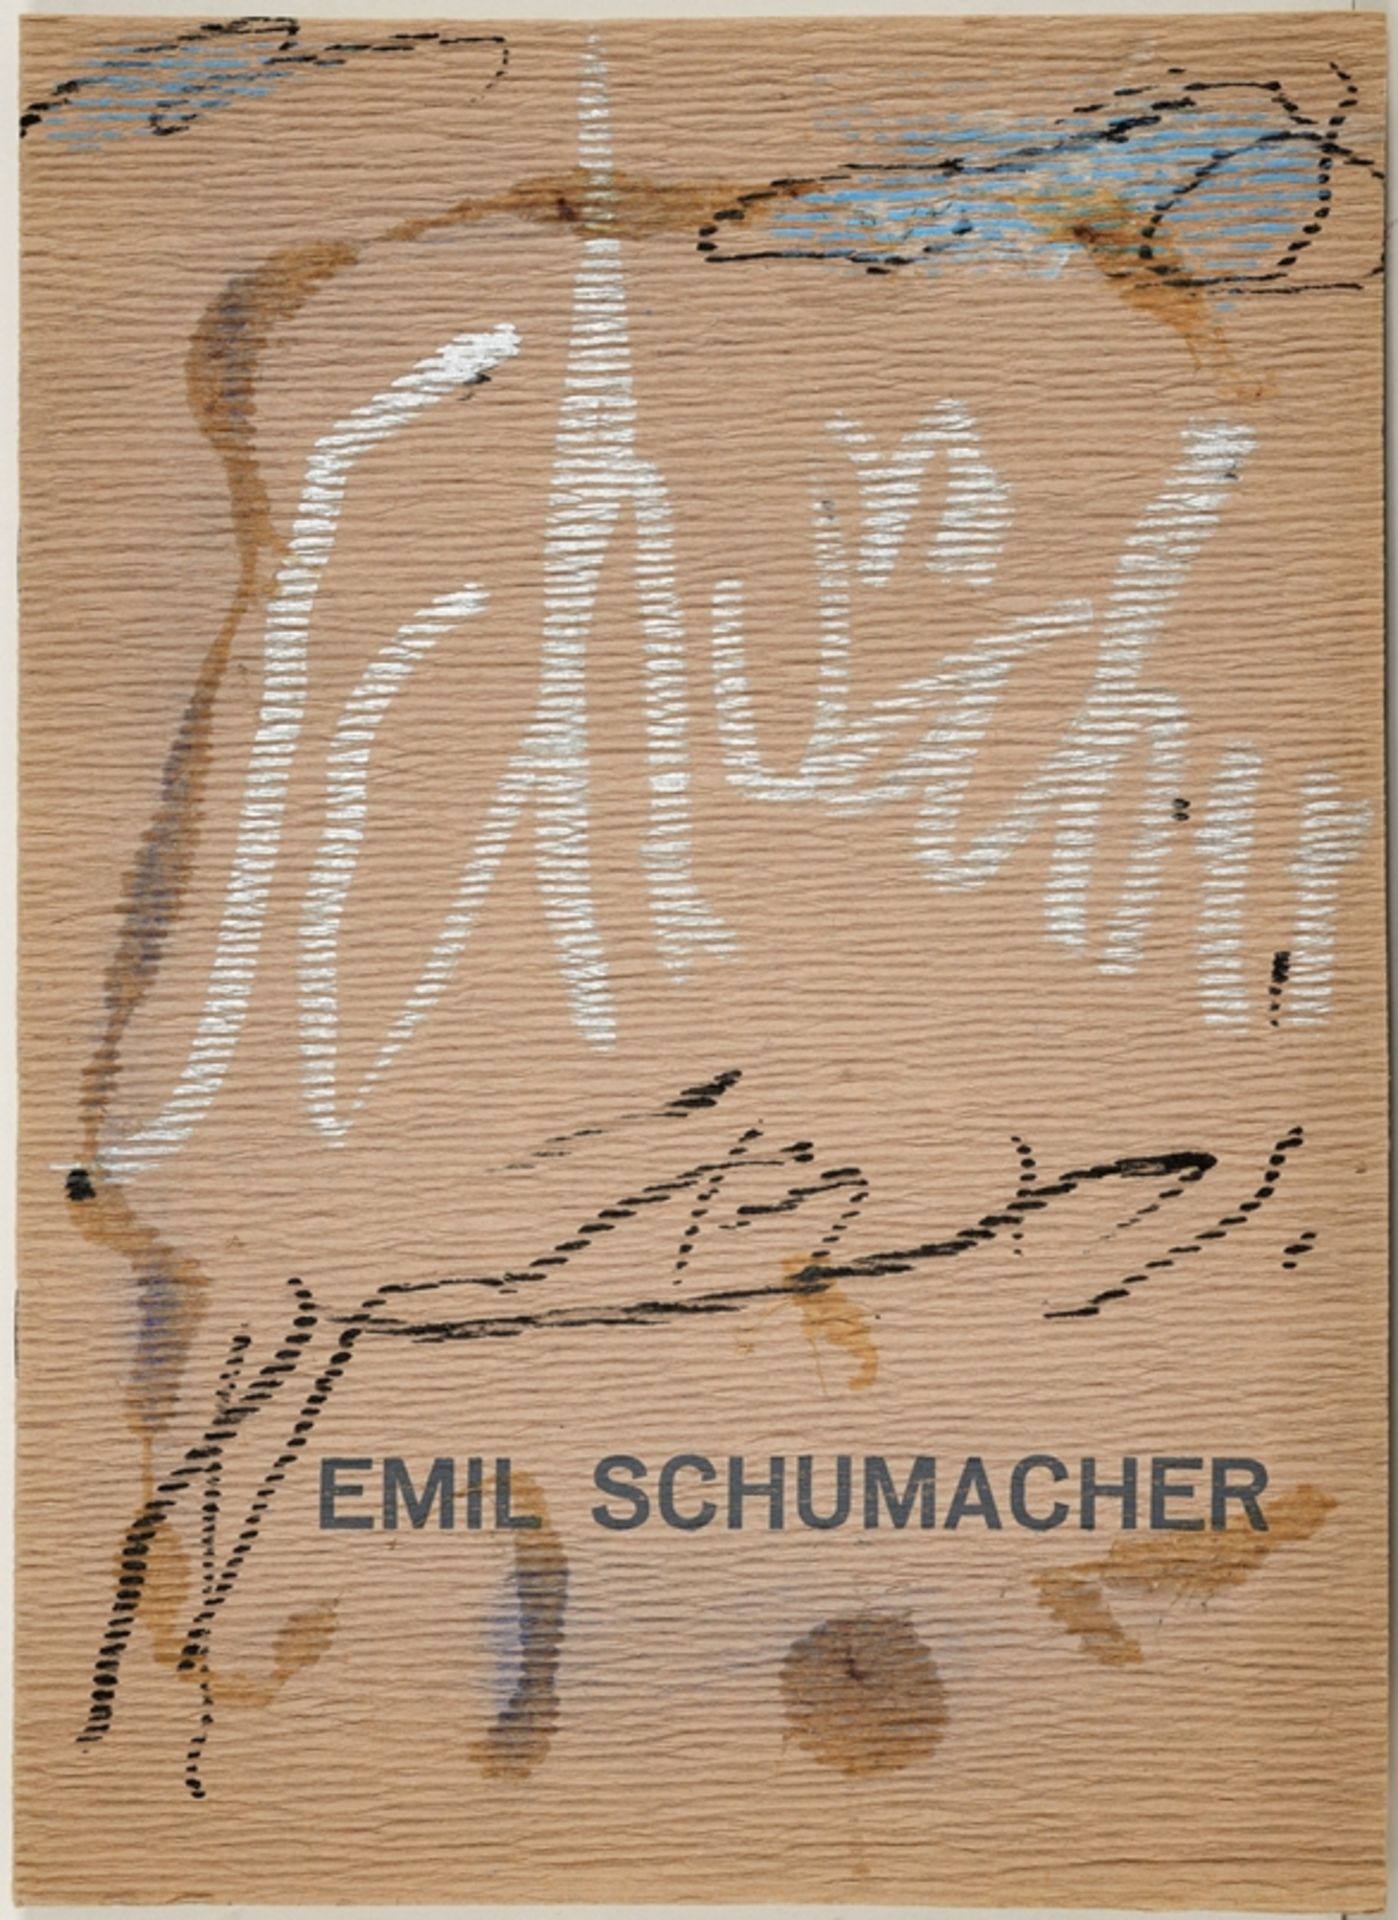 EMIL SCHUMACHER